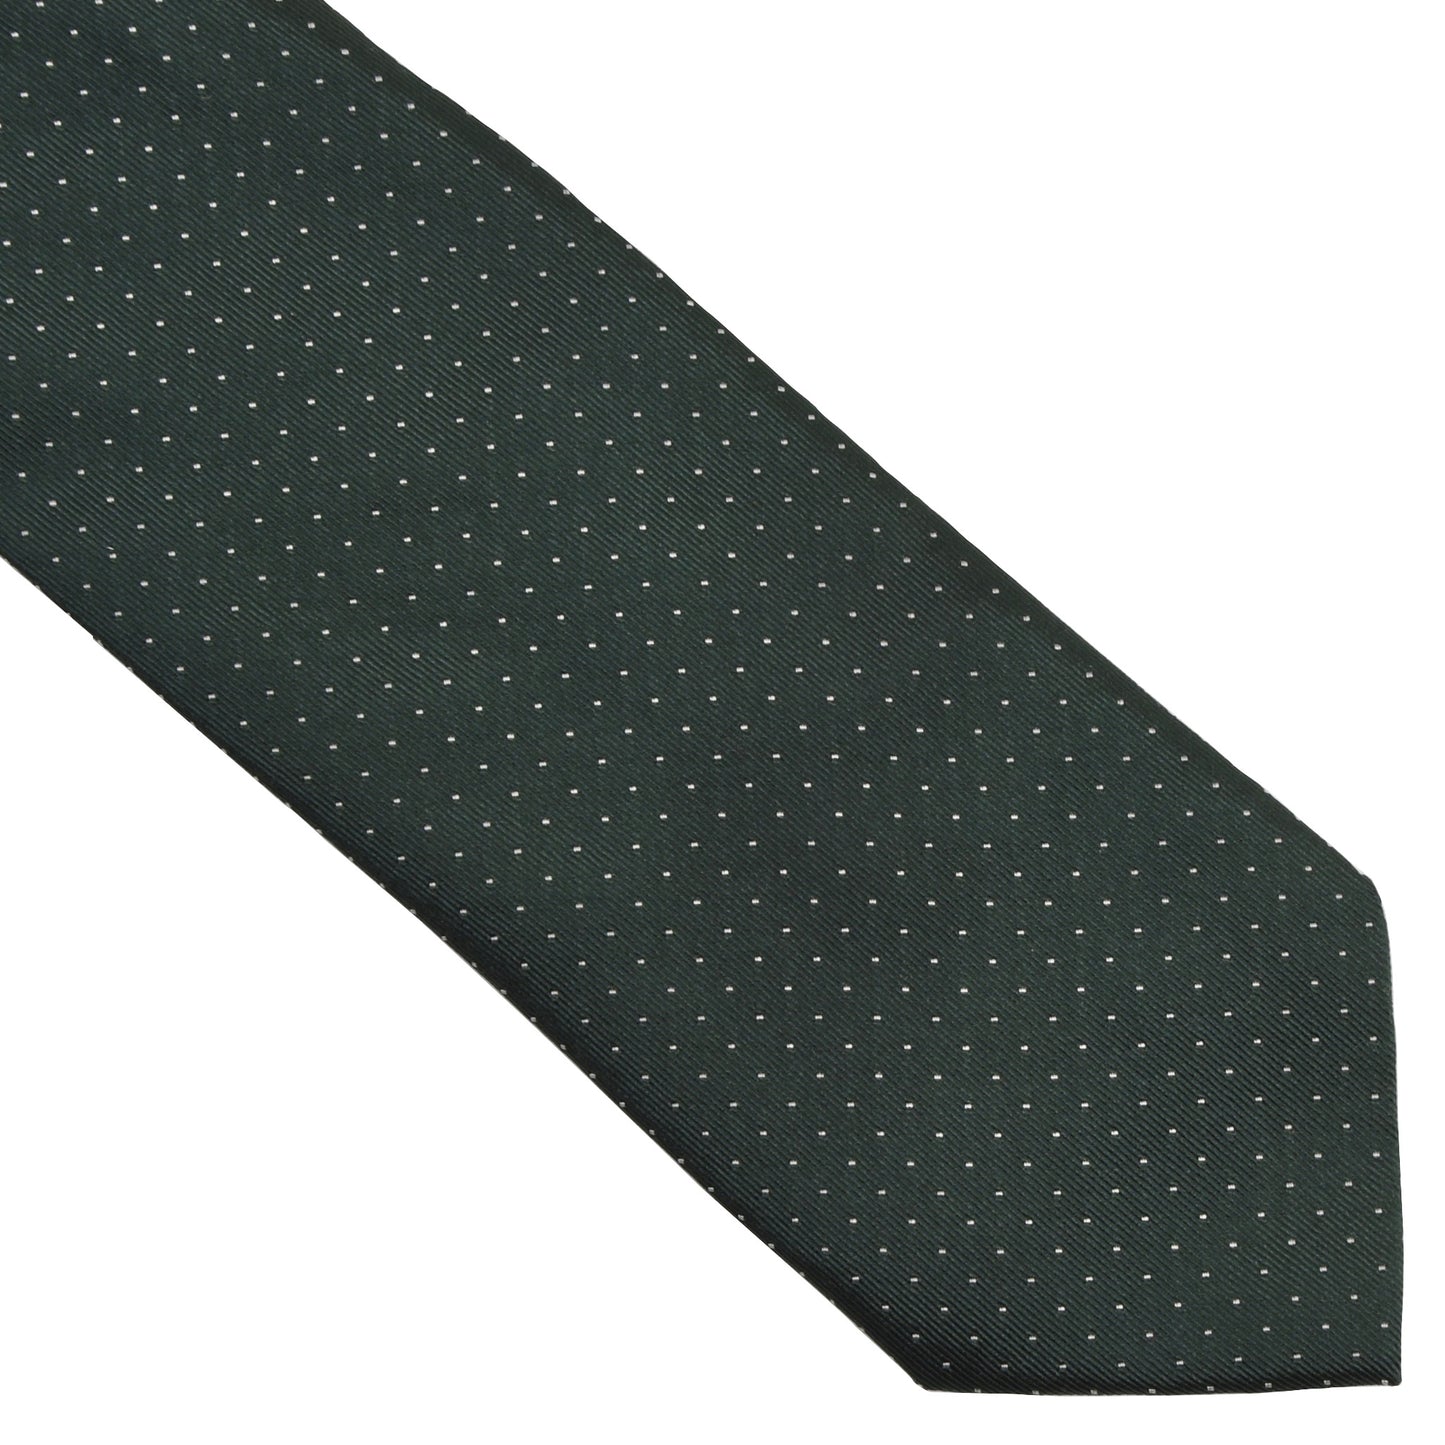 Arfango Silk Pin Dot Tie - Green